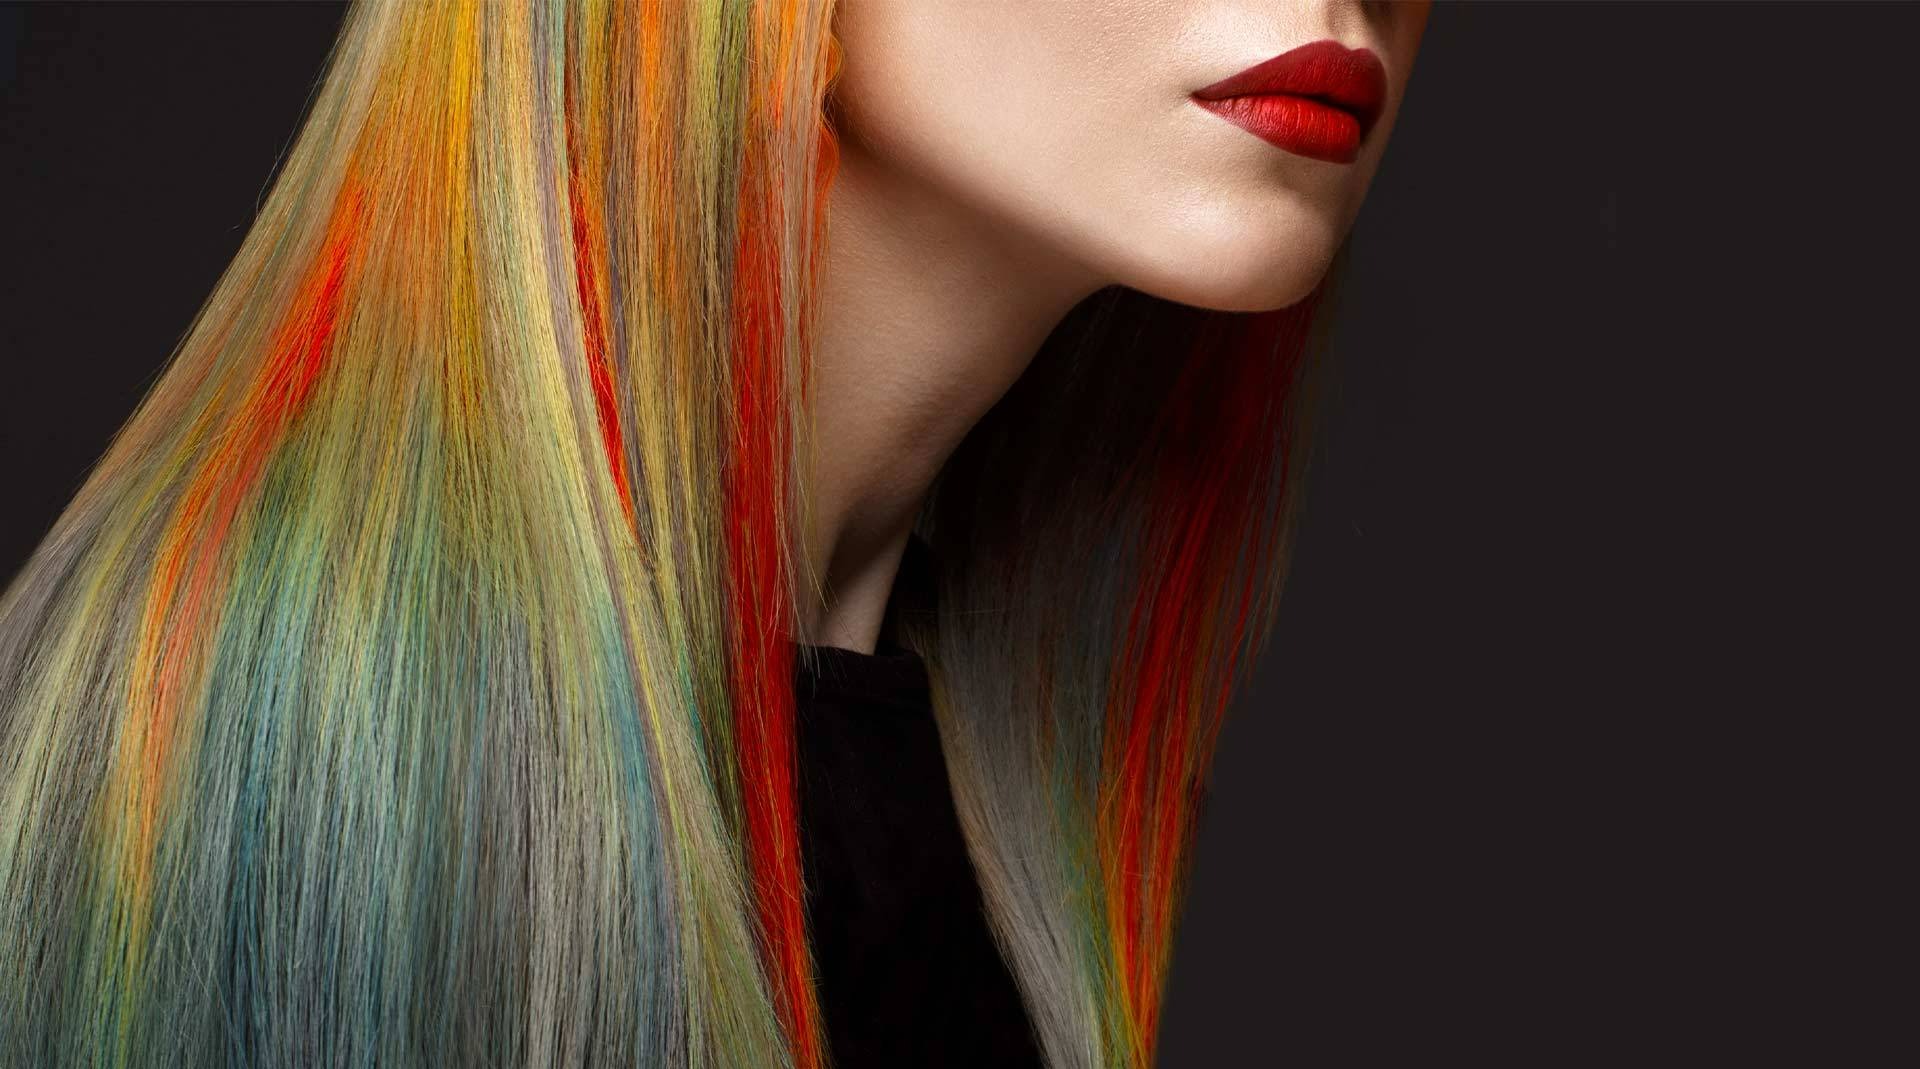 رنگ های کهکشانی - استفاده از گچ مو